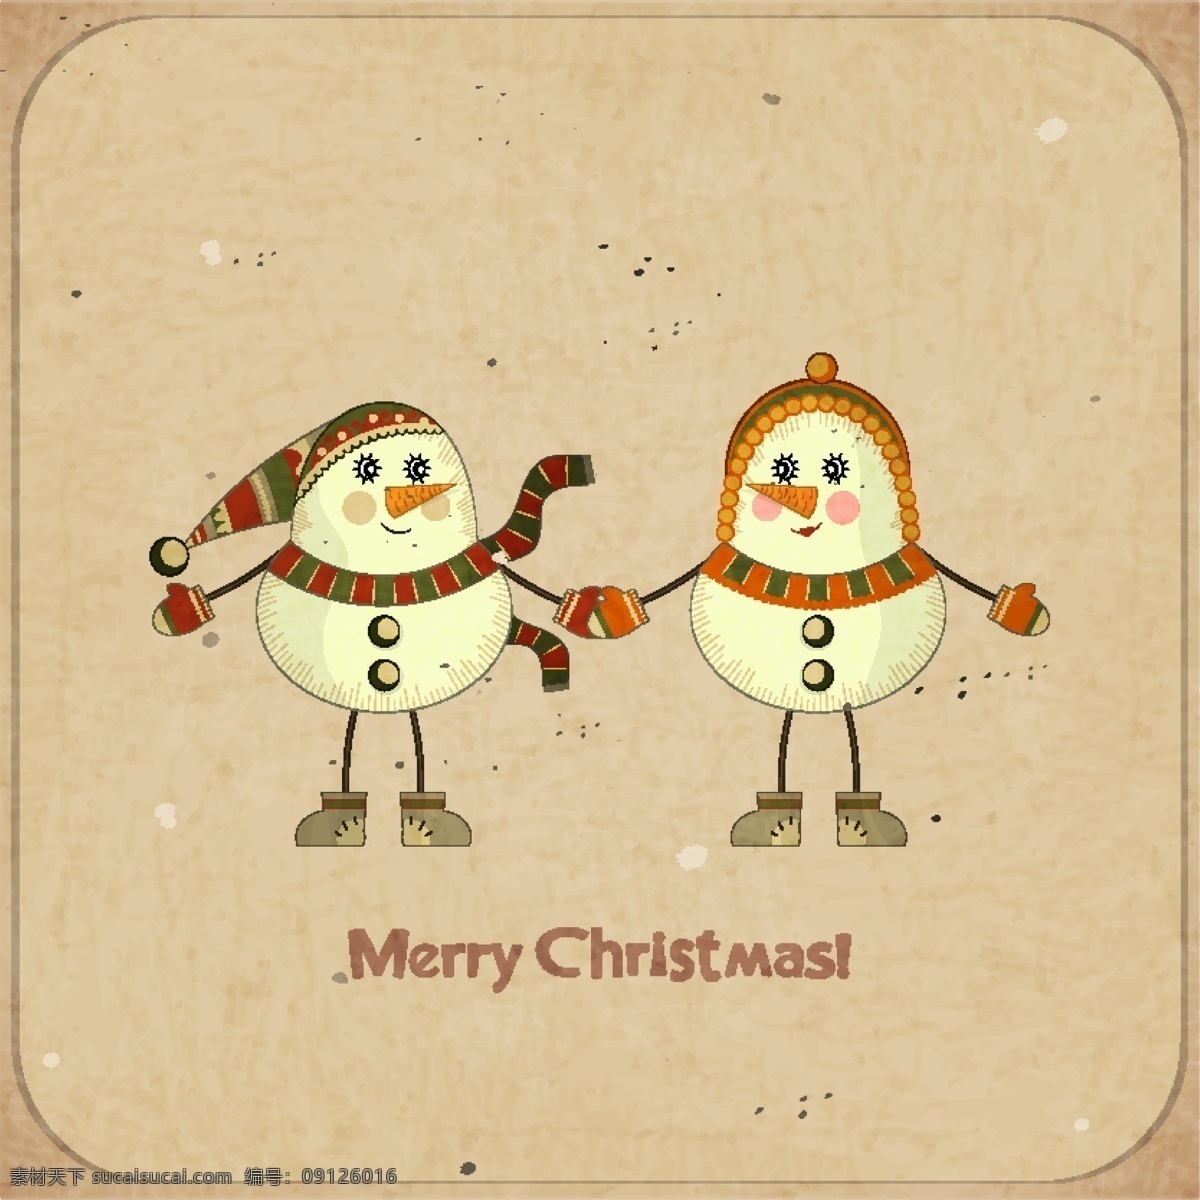 圣诞插画素材 卡通 插画 手绘画 可爱 节日 圣诞节 圣诞快乐 圣诞素材 雪人 底纹背景 底纹边框 矢量素材 黄色